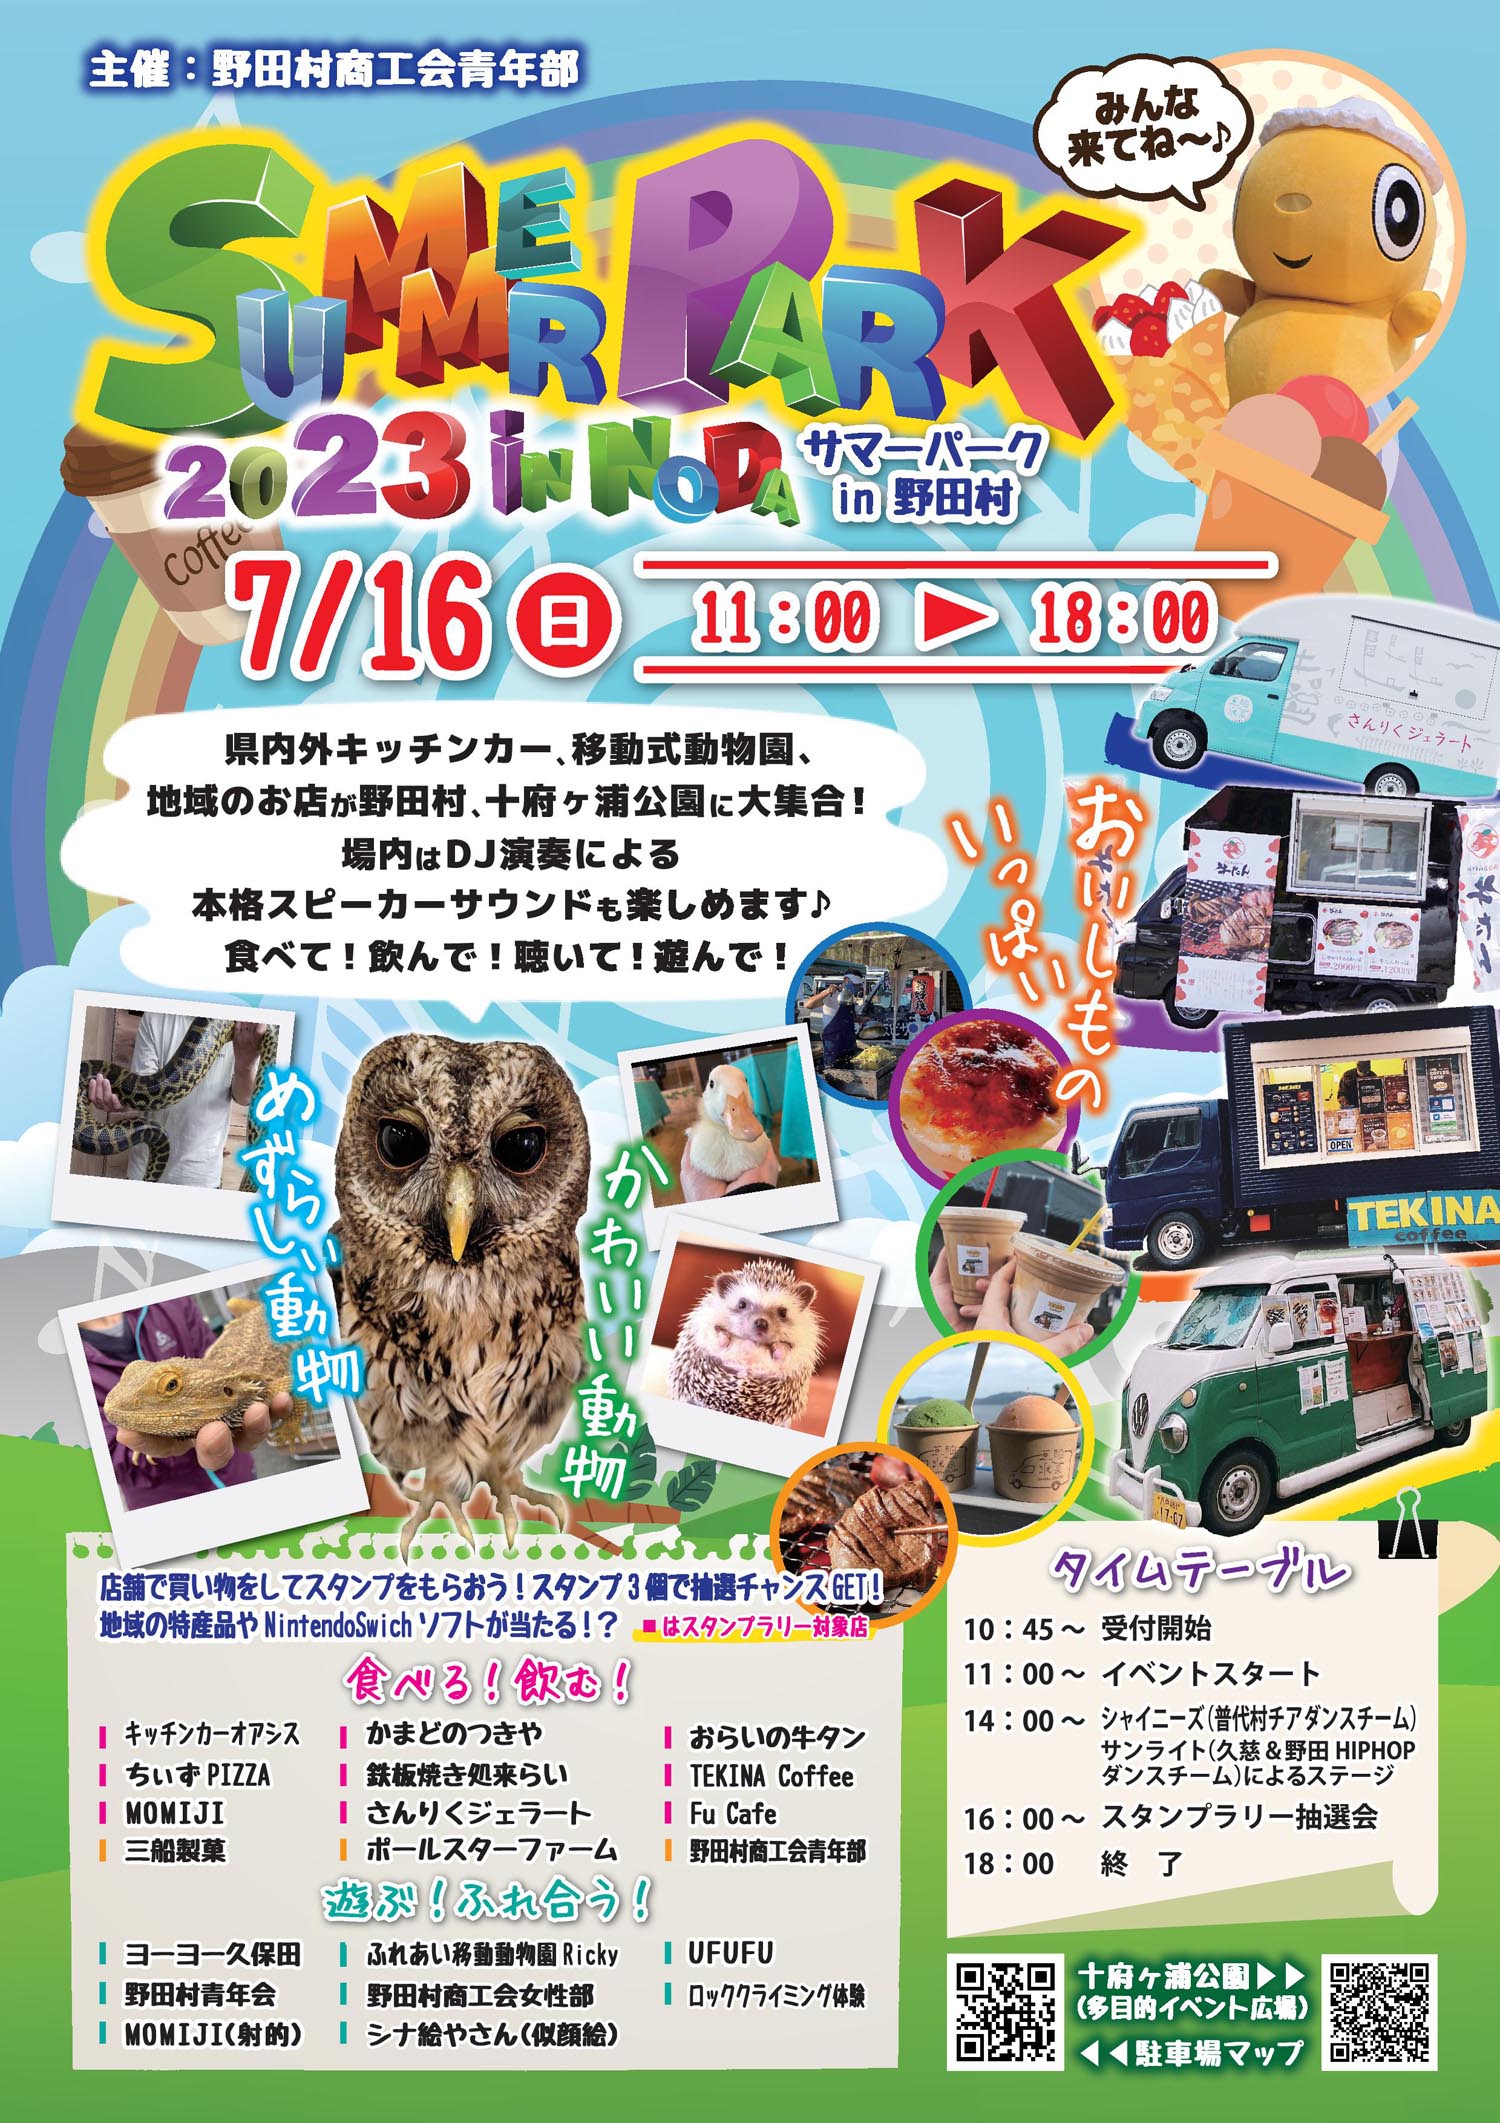 7月16日「サマーパーク2023in野田村」開催 